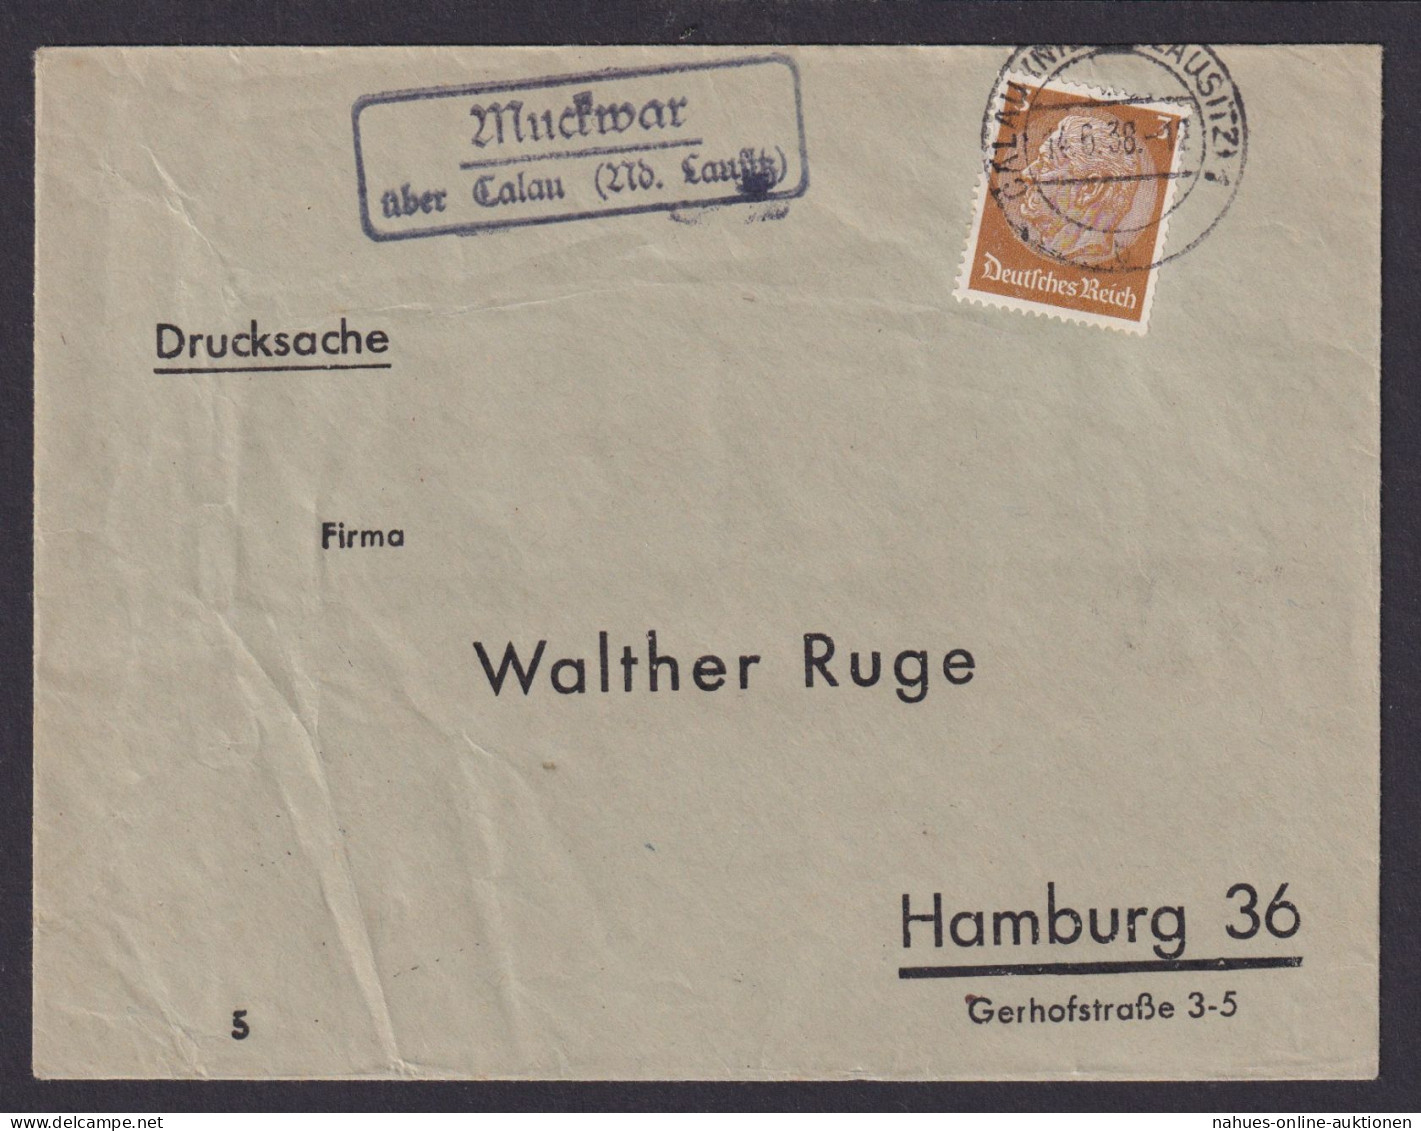 Muckwar über Calau Niederlausitz Brandenburg Deutsches Reich Brief - Covers & Documents